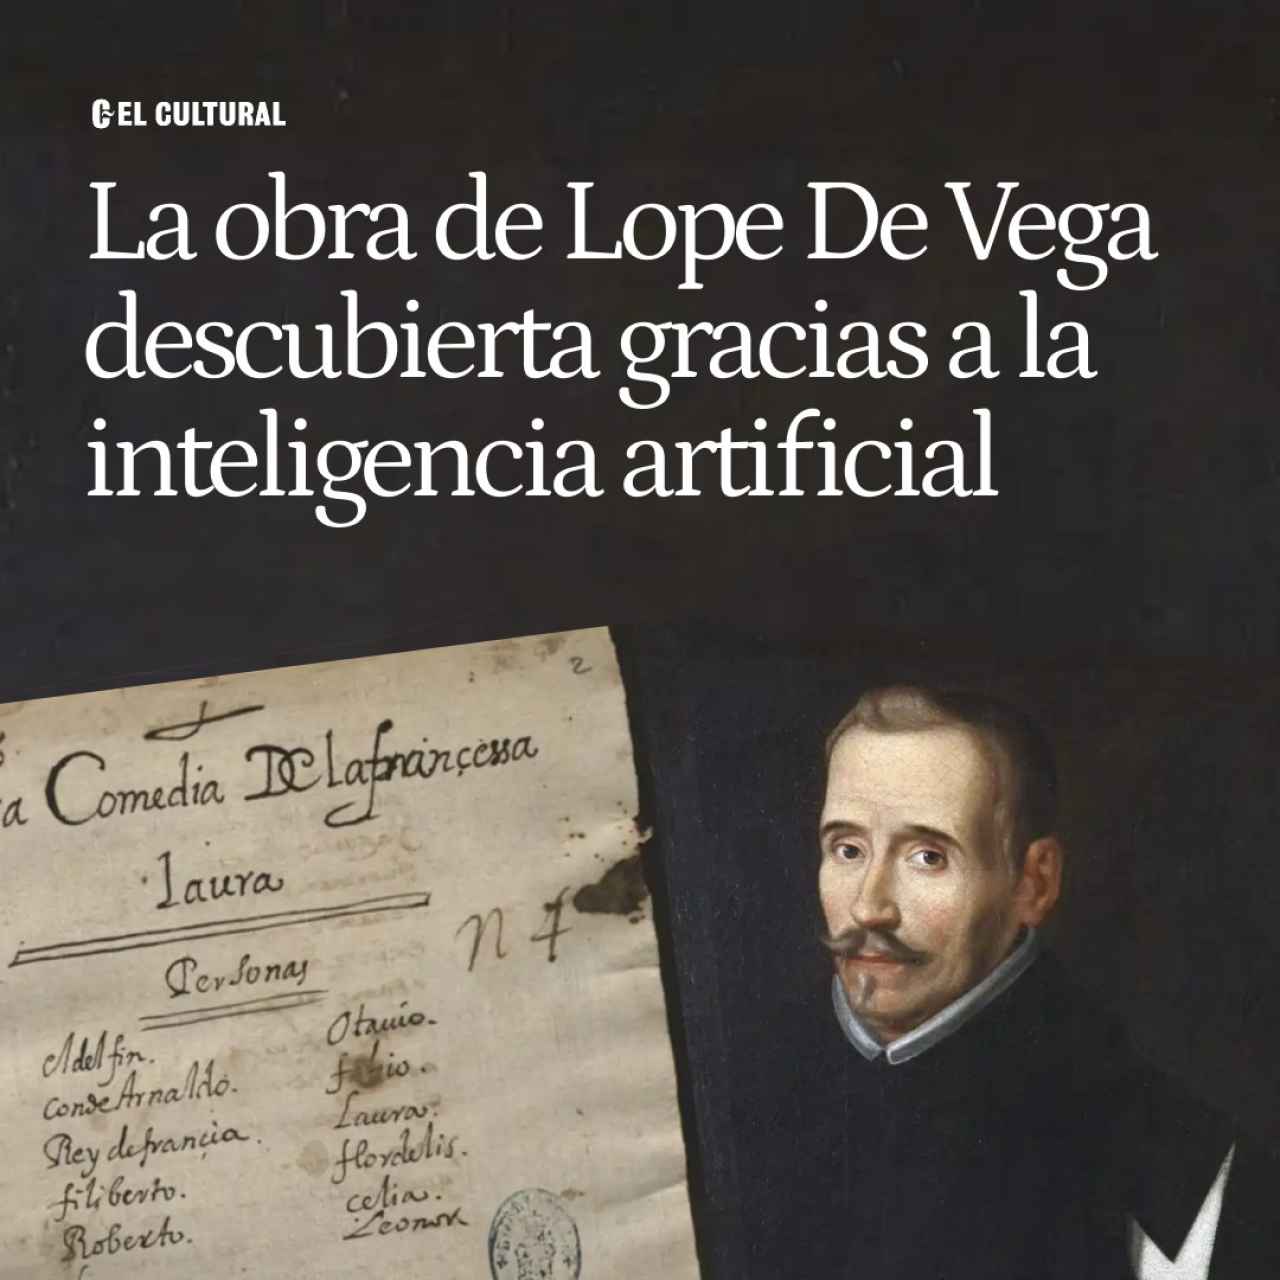 Una obra desconocida de Lope de Vega, descubierta en la BNE gracias a la inteligencia artificial